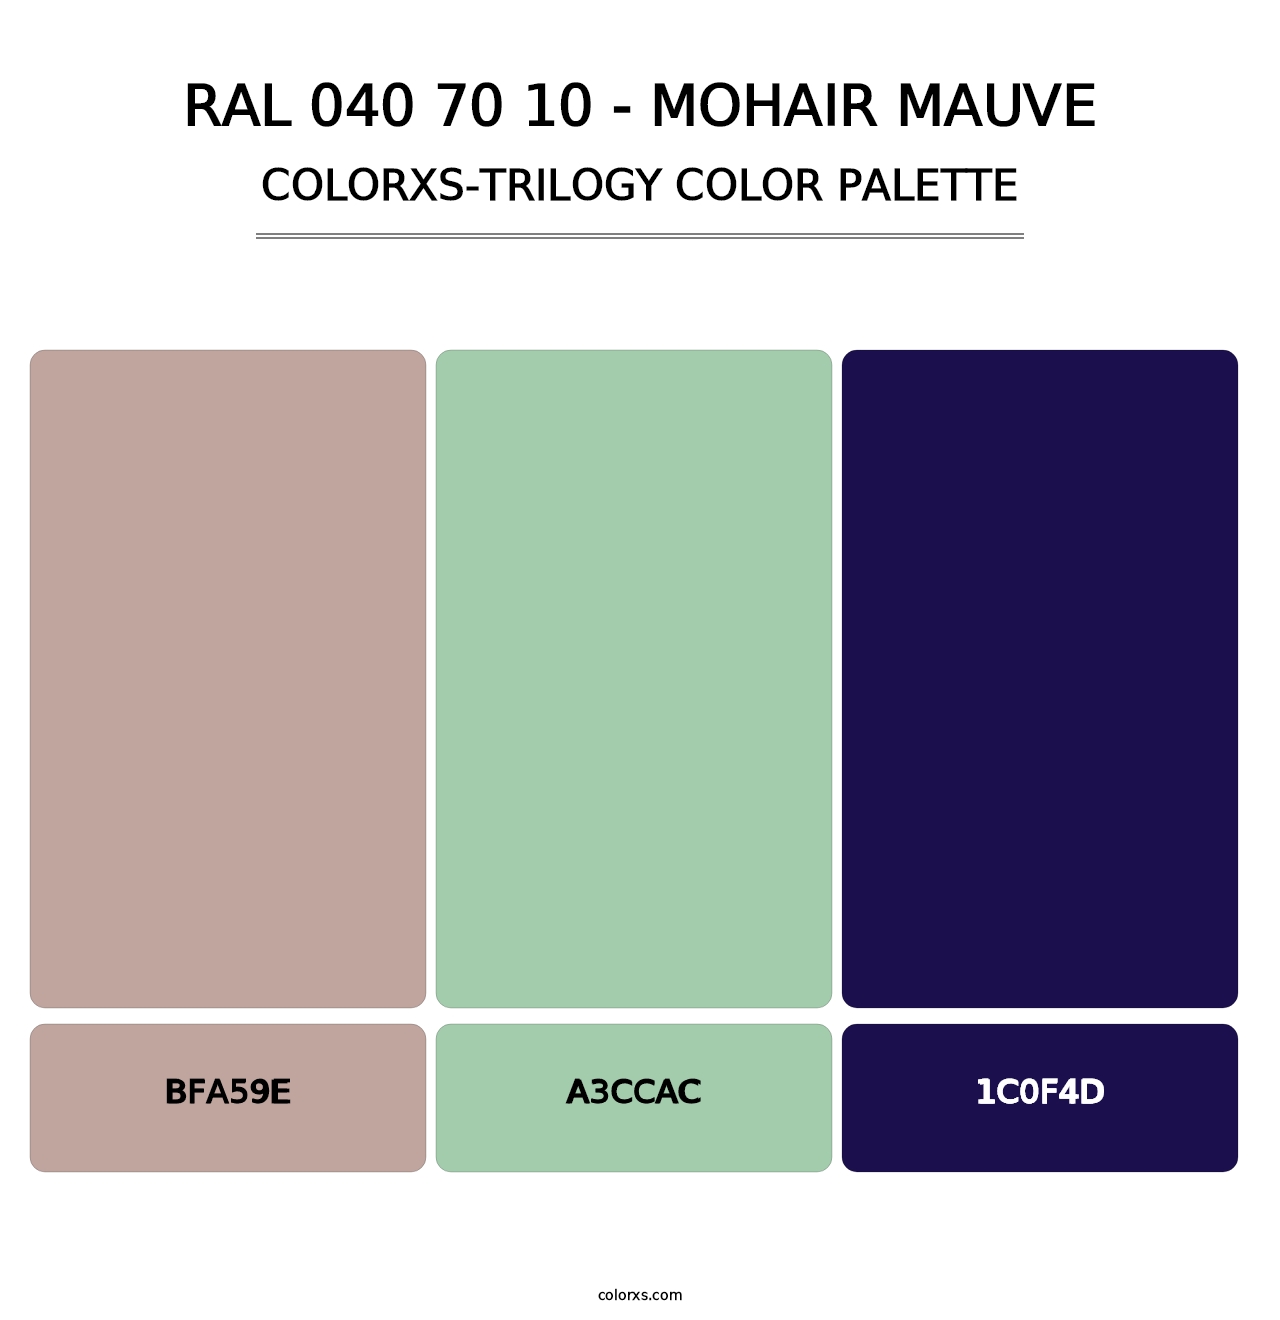 RAL 040 70 10 - Mohair Mauve - Colorxs Trilogy Palette